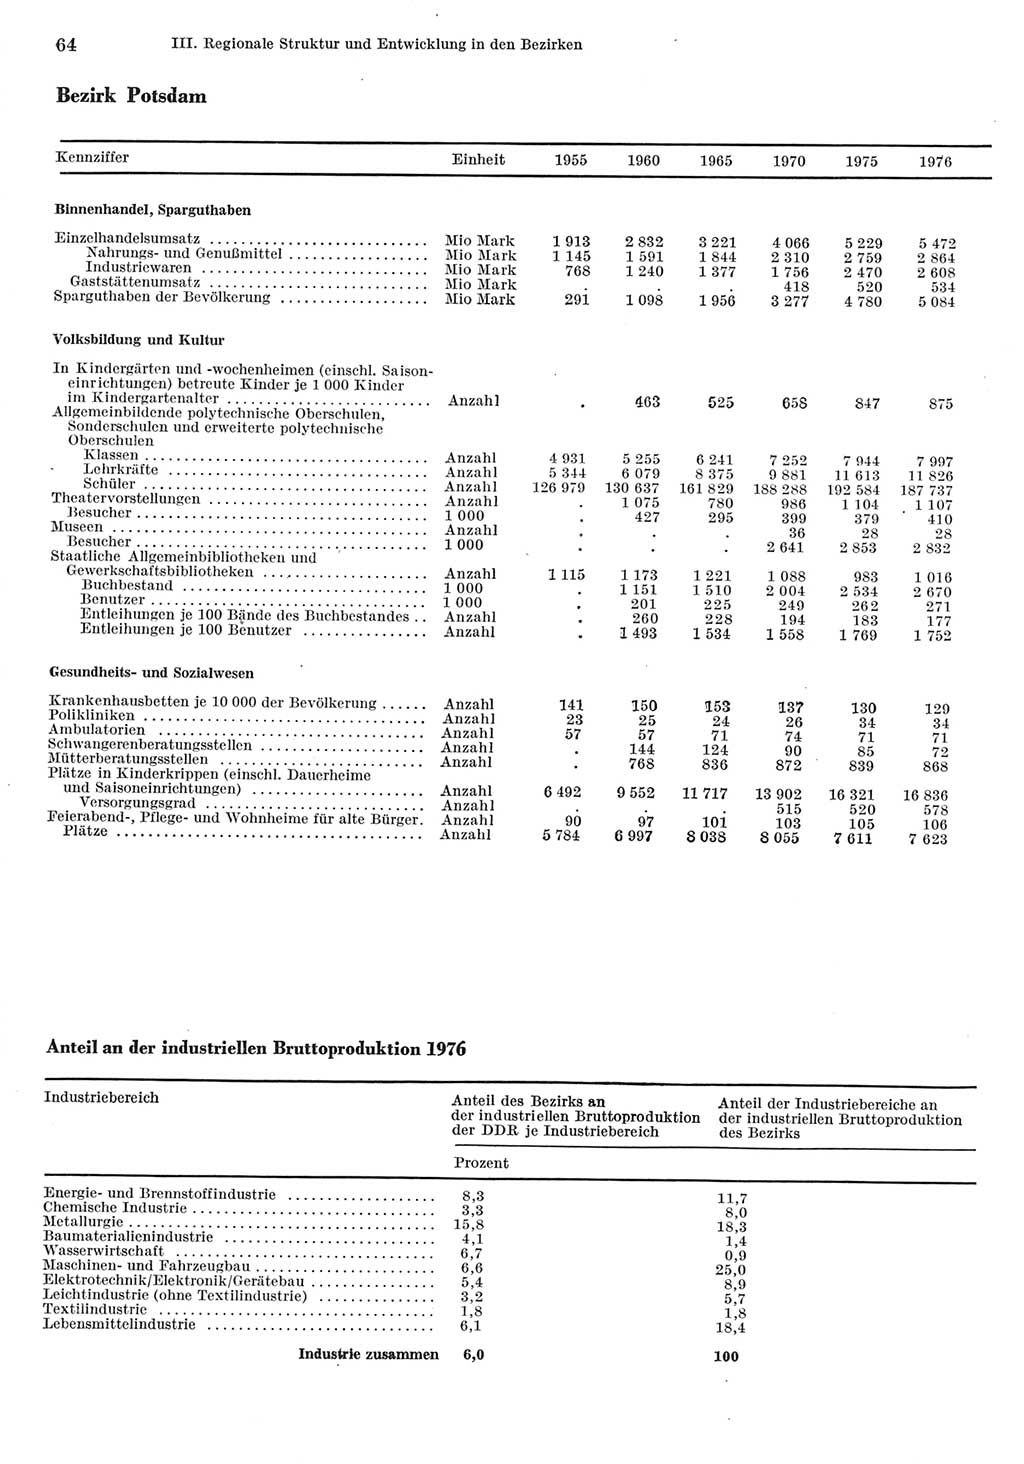 Statistisches Jahrbuch der Deutschen Demokratischen Republik (DDR) 1977, Seite 64 (Stat. Jb. DDR 1977, S. 64)